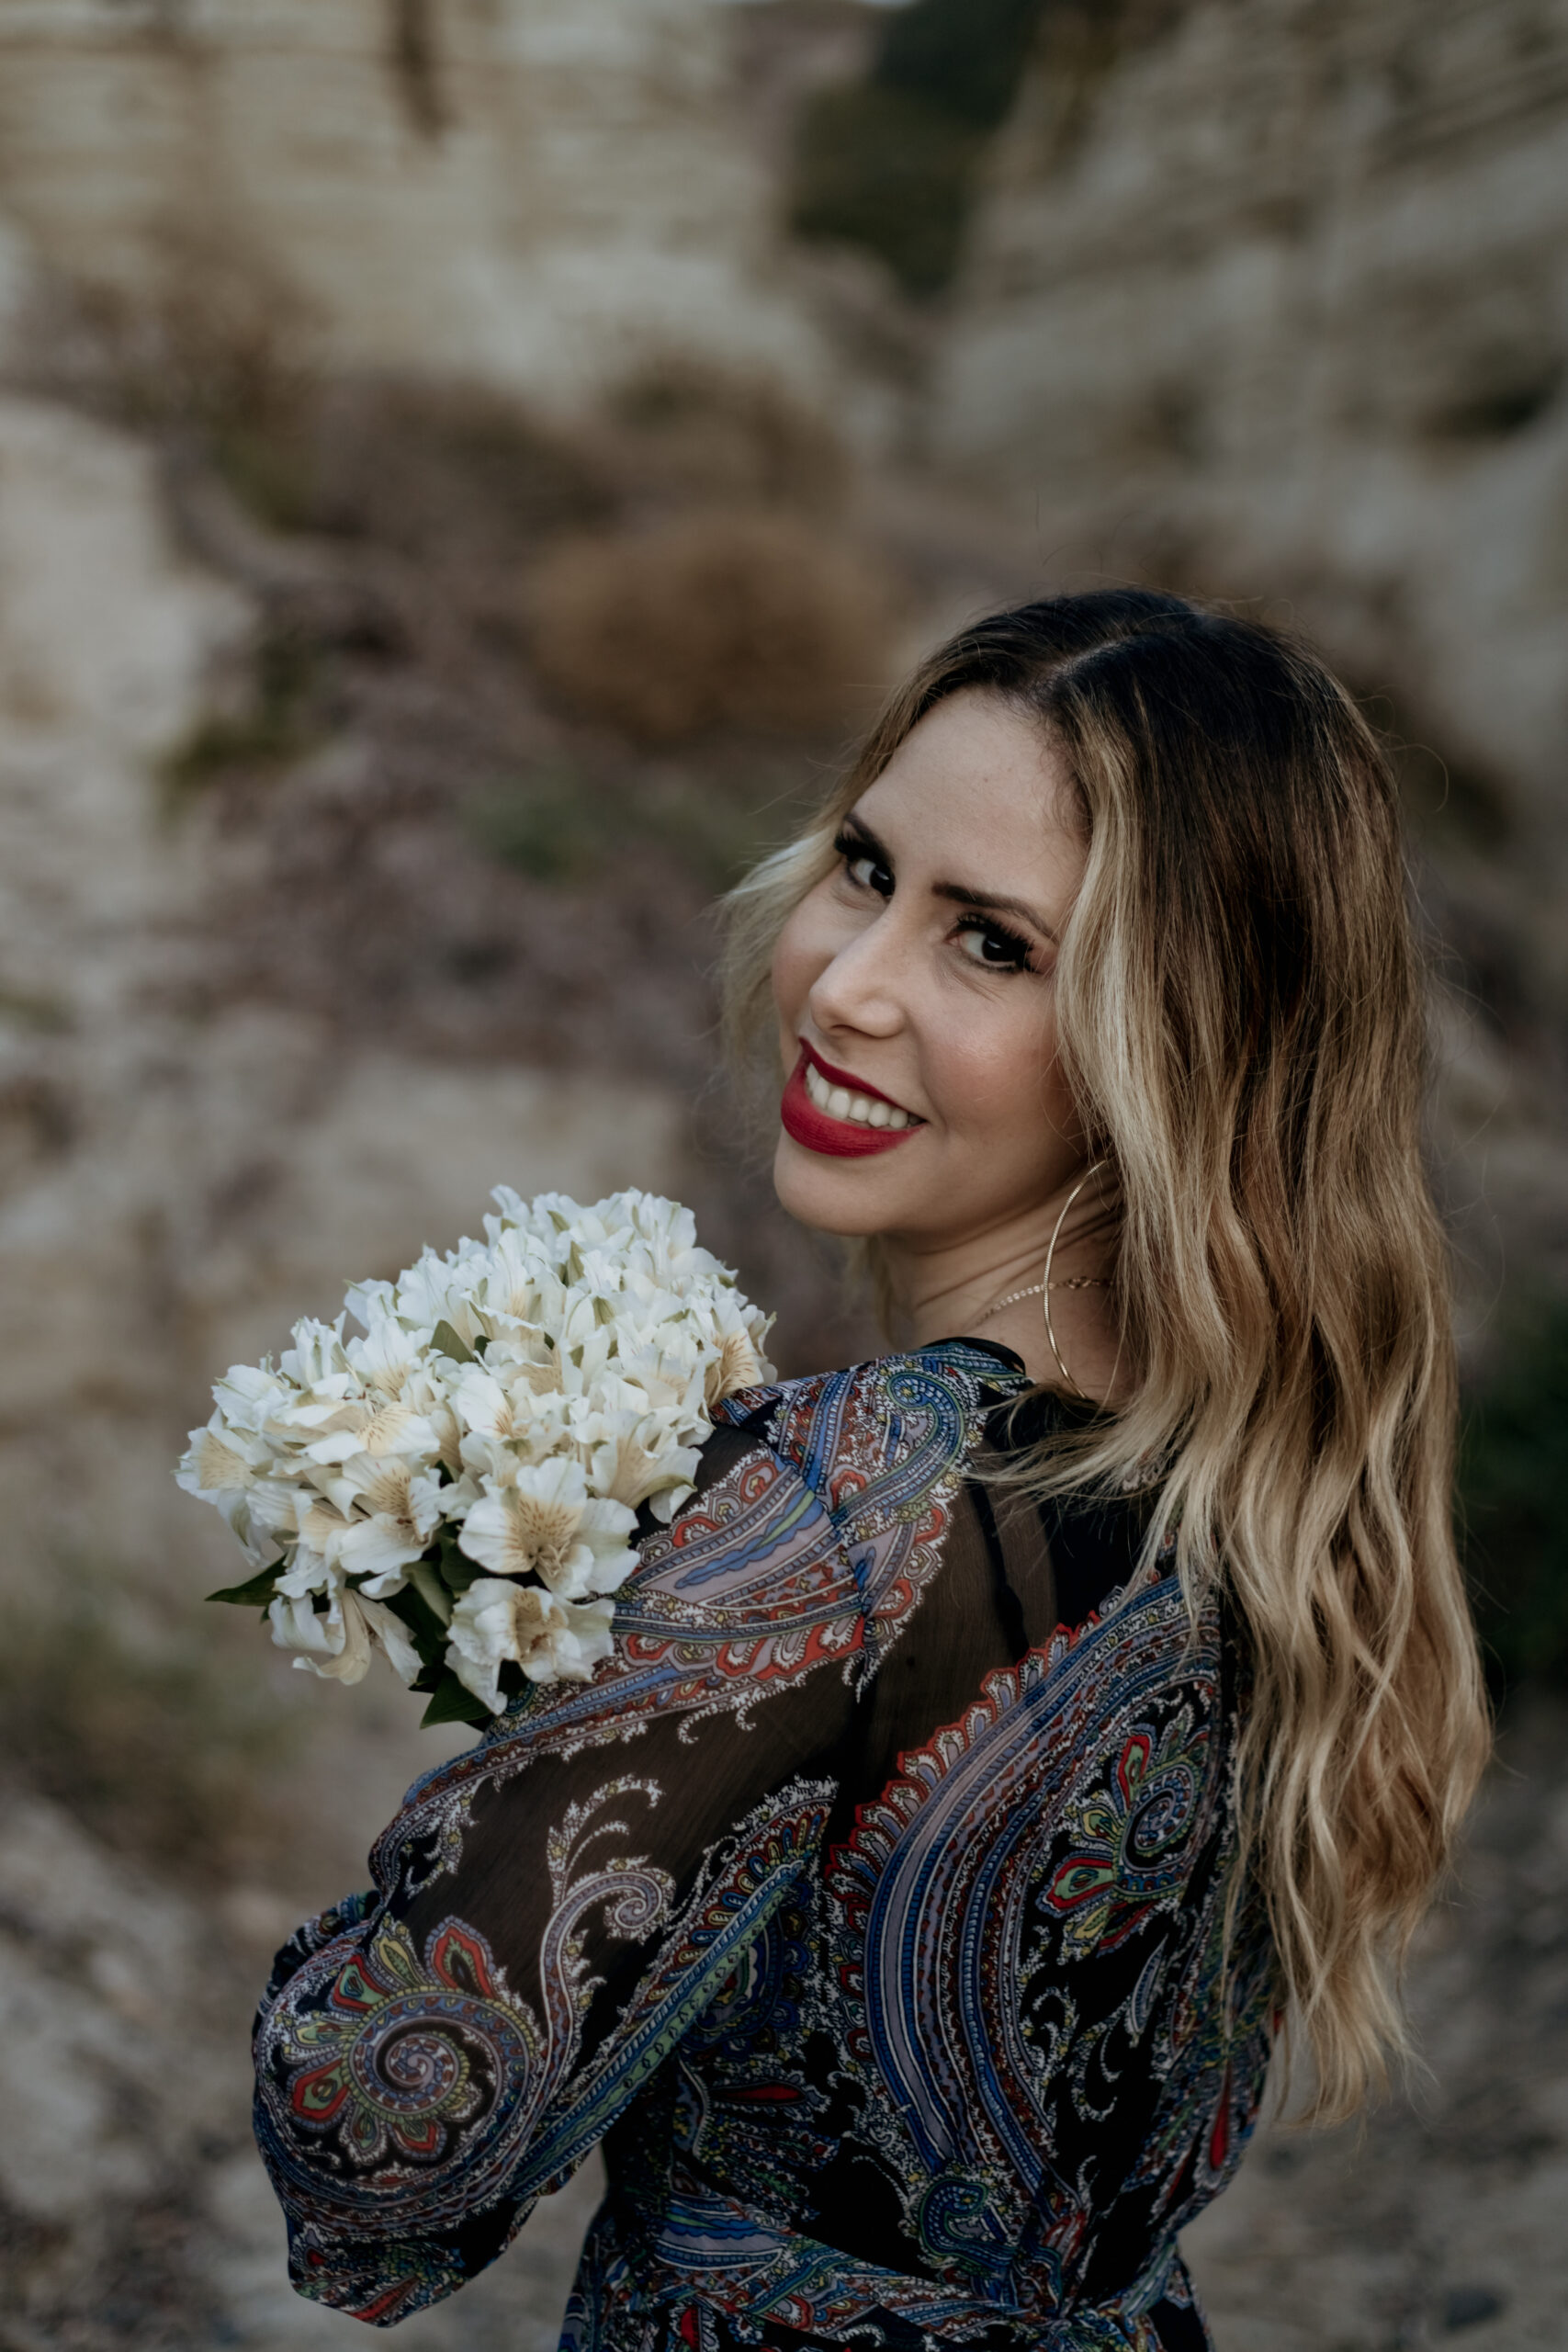 Nãna Shara lança “Algo Melhor” canção que marca a sua jornada cristã